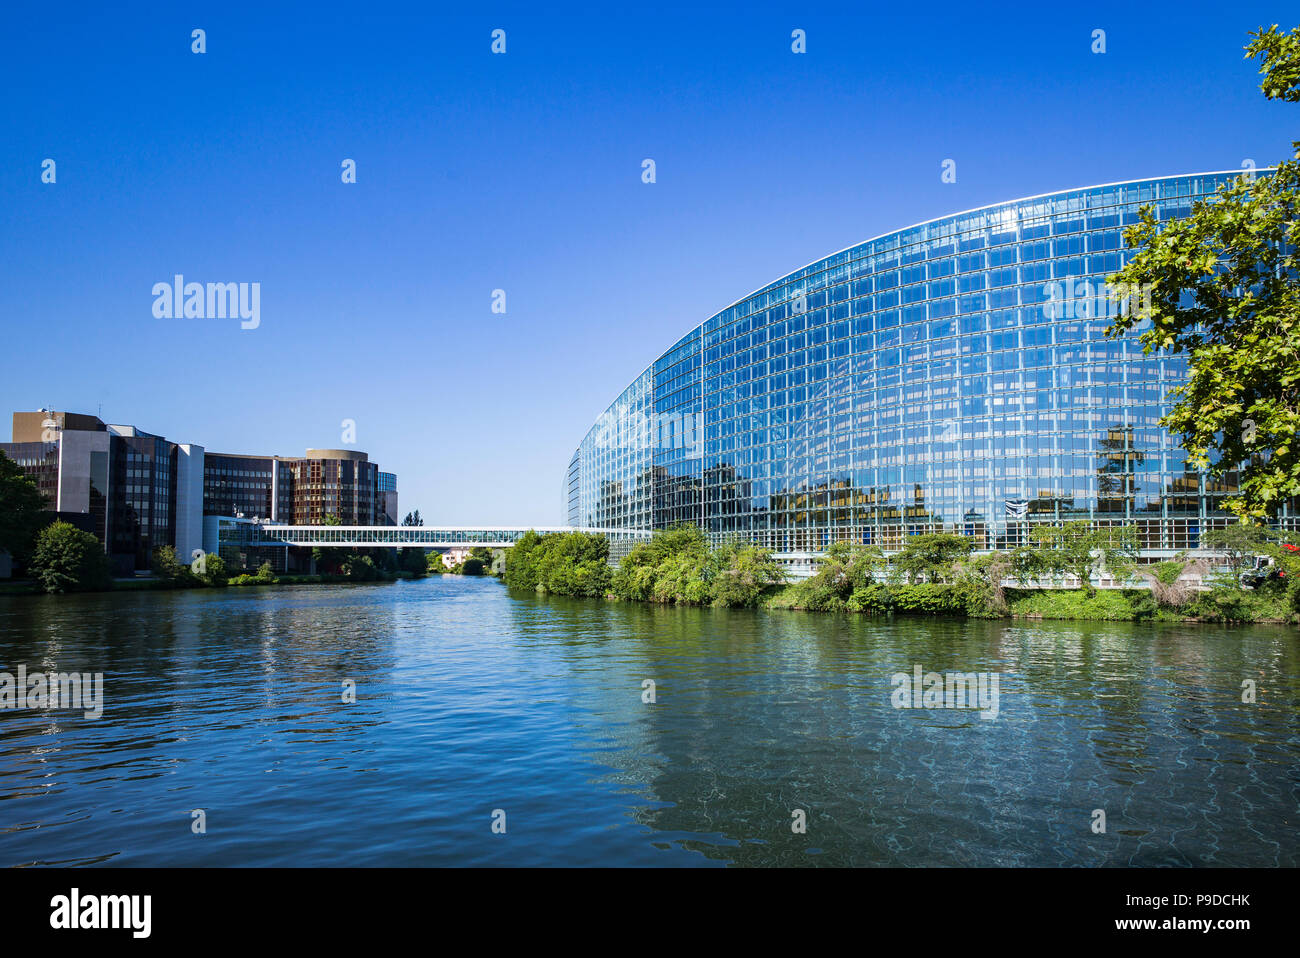 Estrasburgo, edificios del Parlamento Europeo, el edificio Louise Weiss, del río Ill, Alsacia, Francia, Europa, Foto de stock